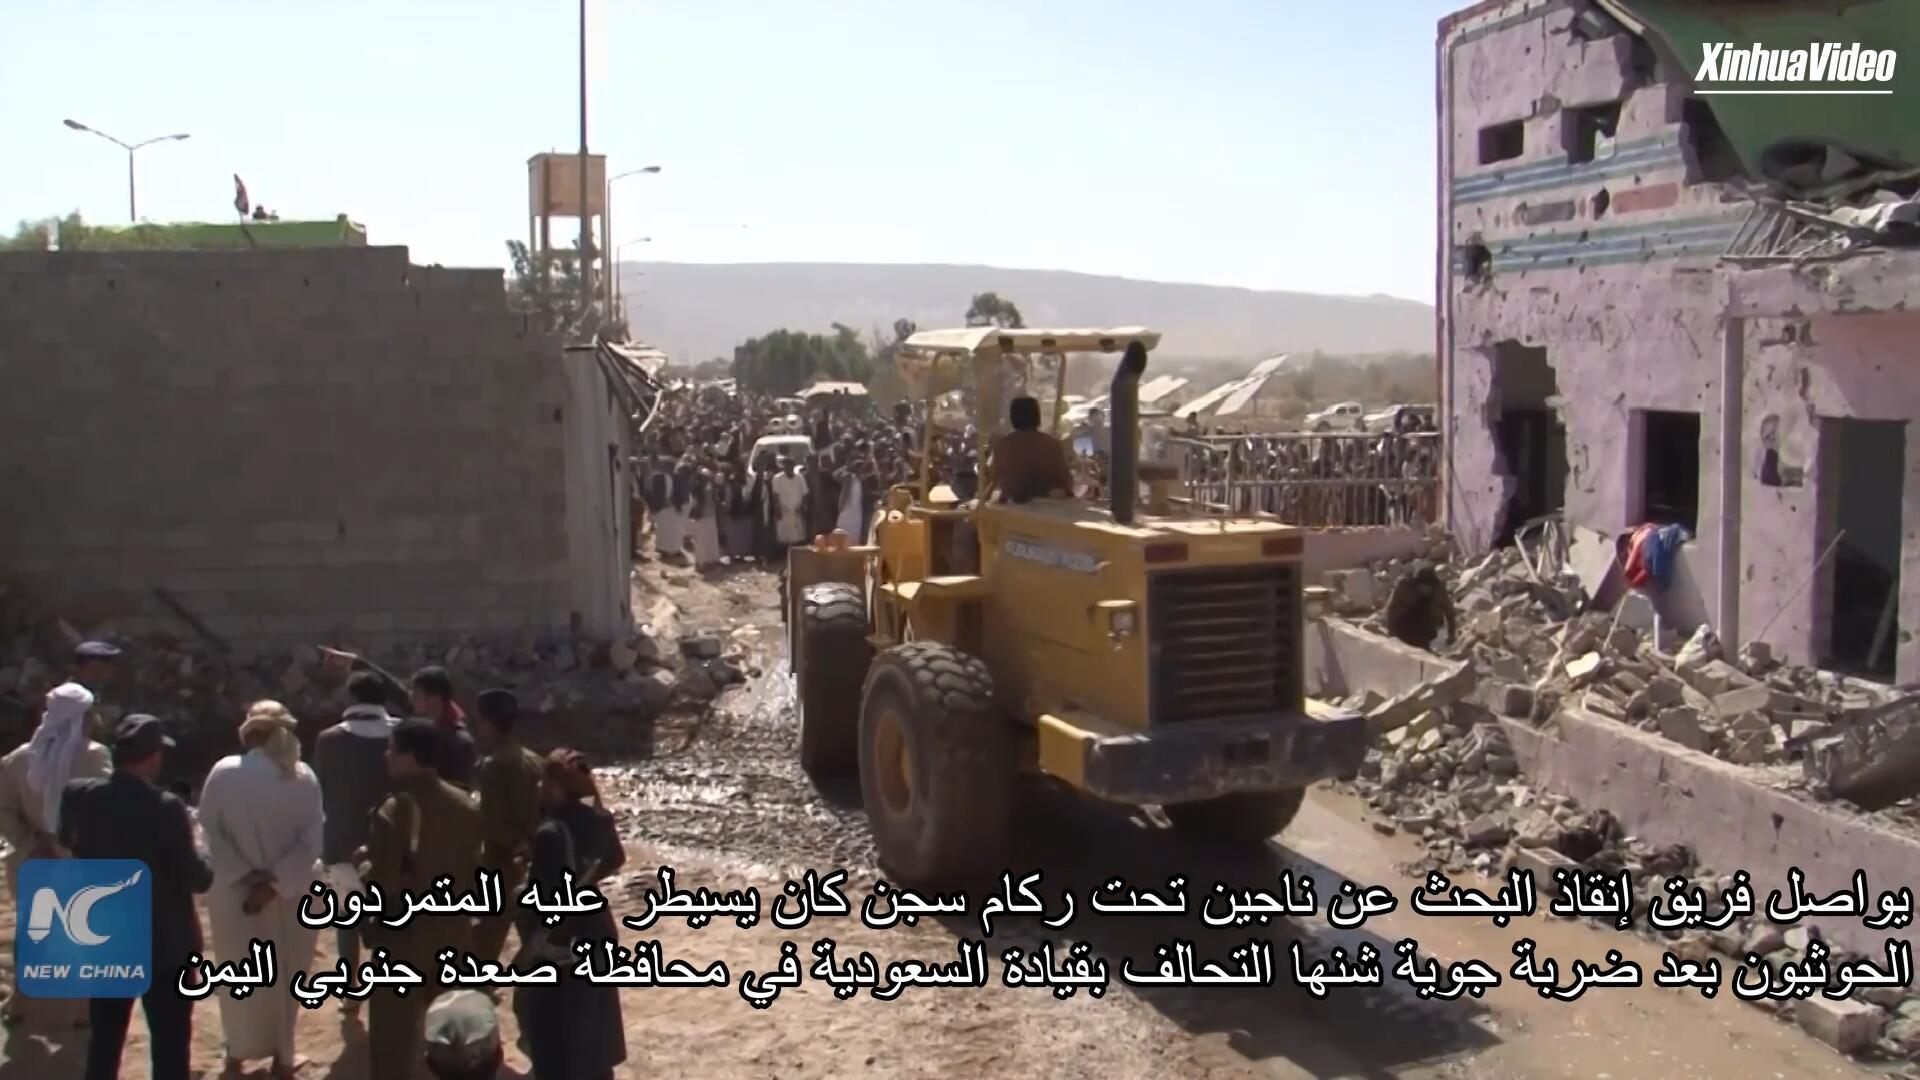 فيديو: فريق إنقاذ يواصل البحث عن ناجين من الضربة الجوية التي استهدفت سجنا في اليمن